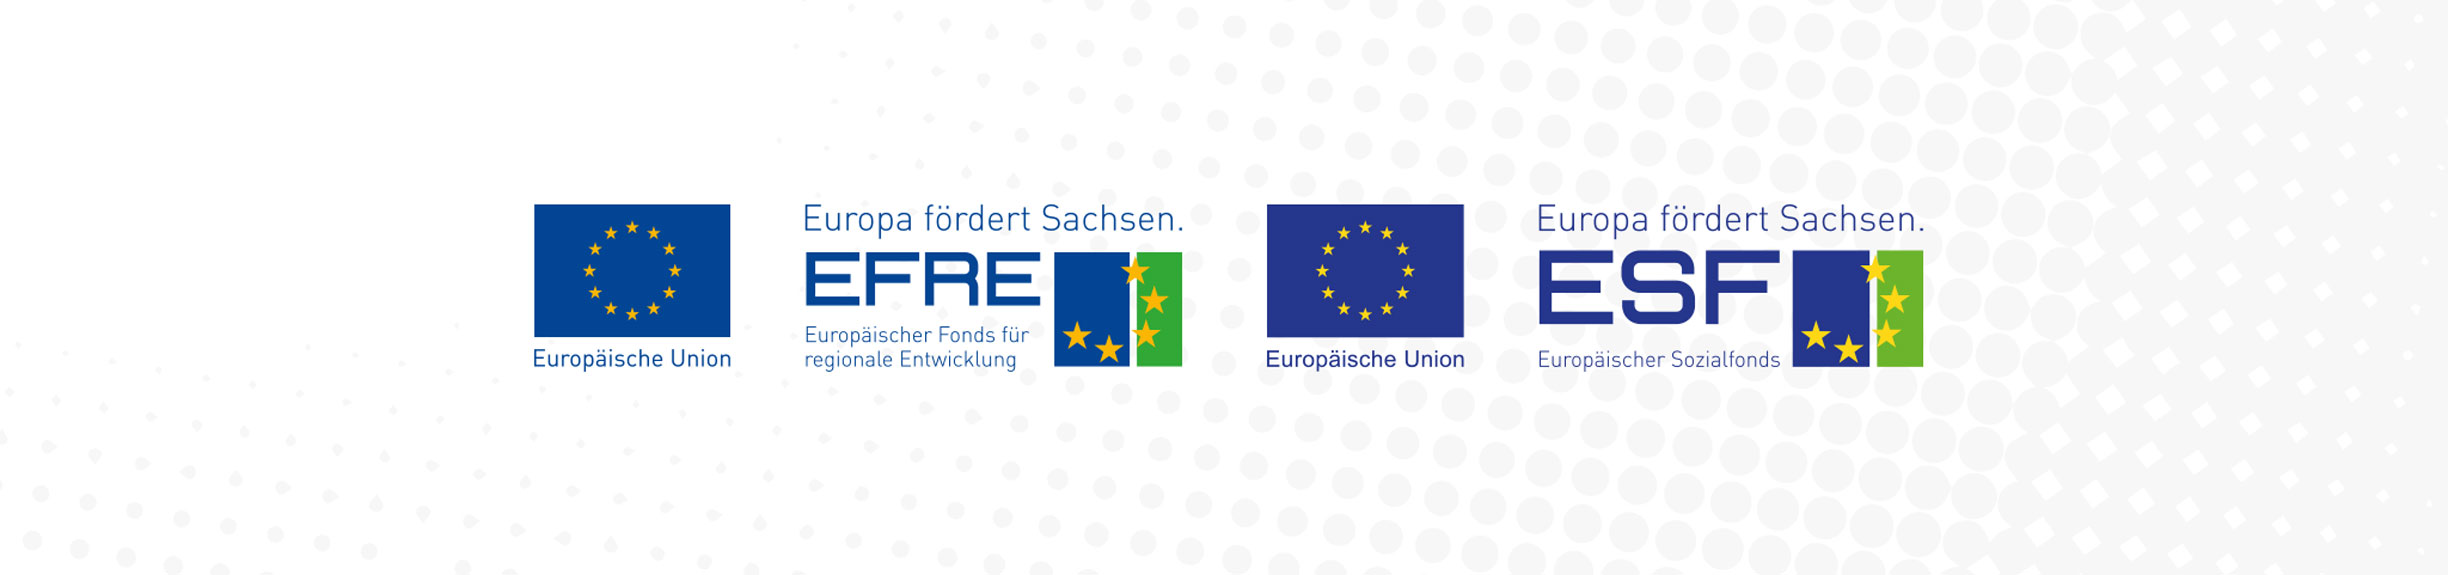 Logos des Europäischen Fonds für regionale Entwicklung und Europäischen Sozialfonds